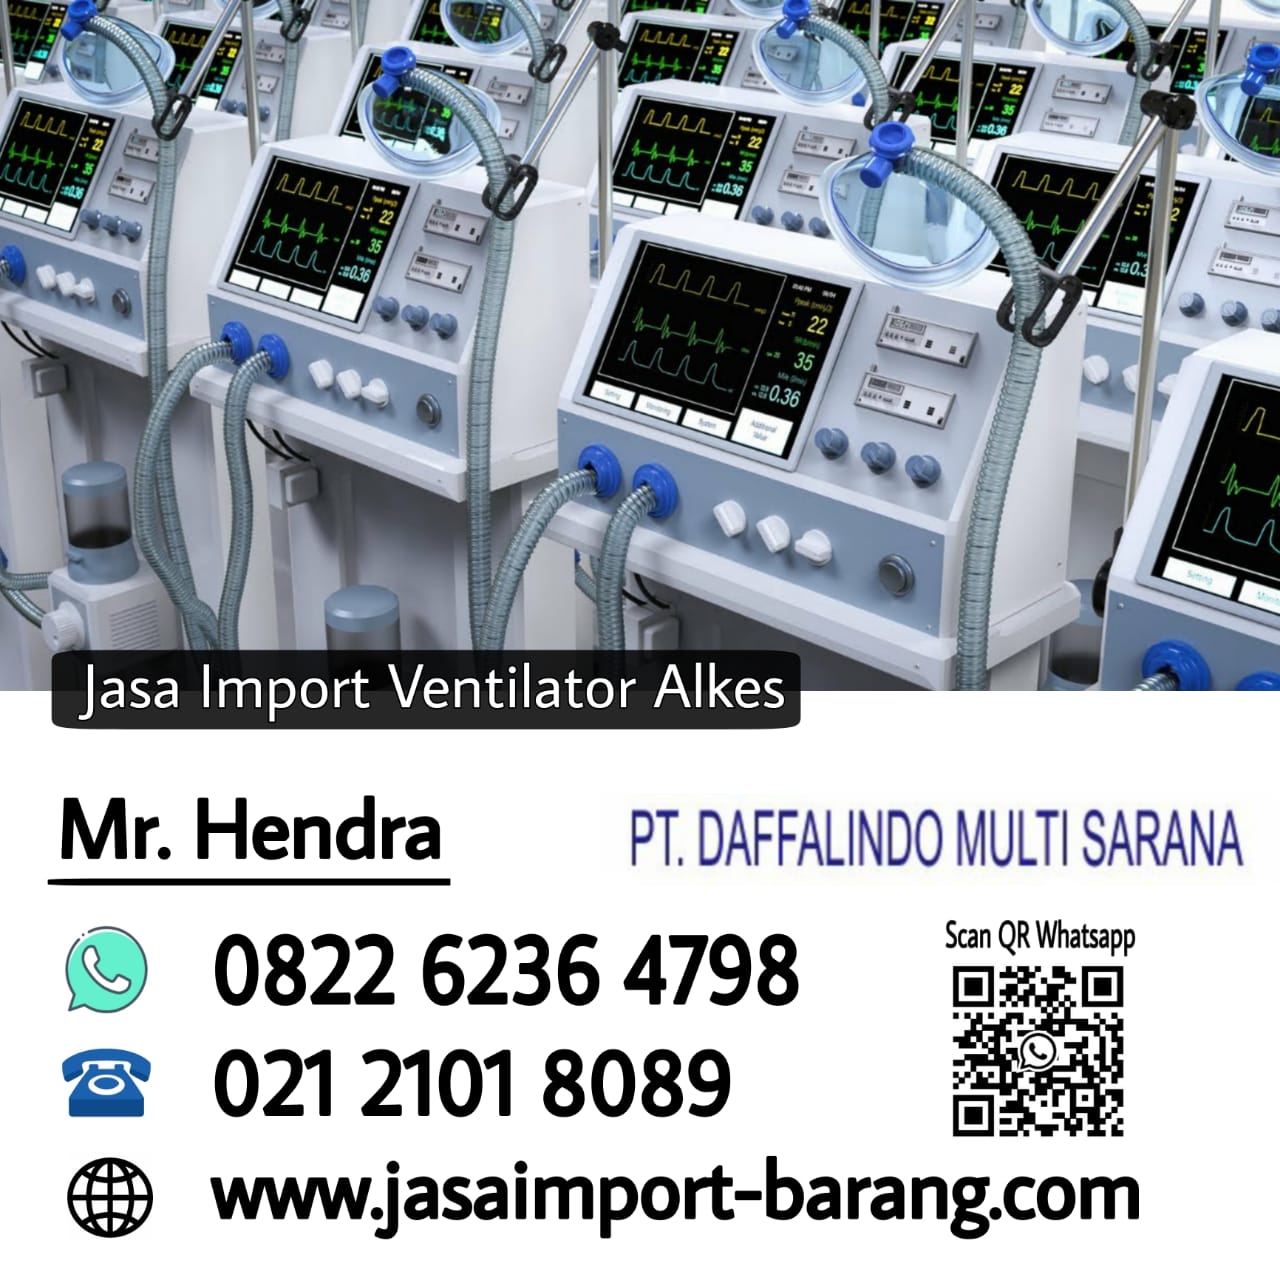 jasa_import_ventilator_alkes.jpg